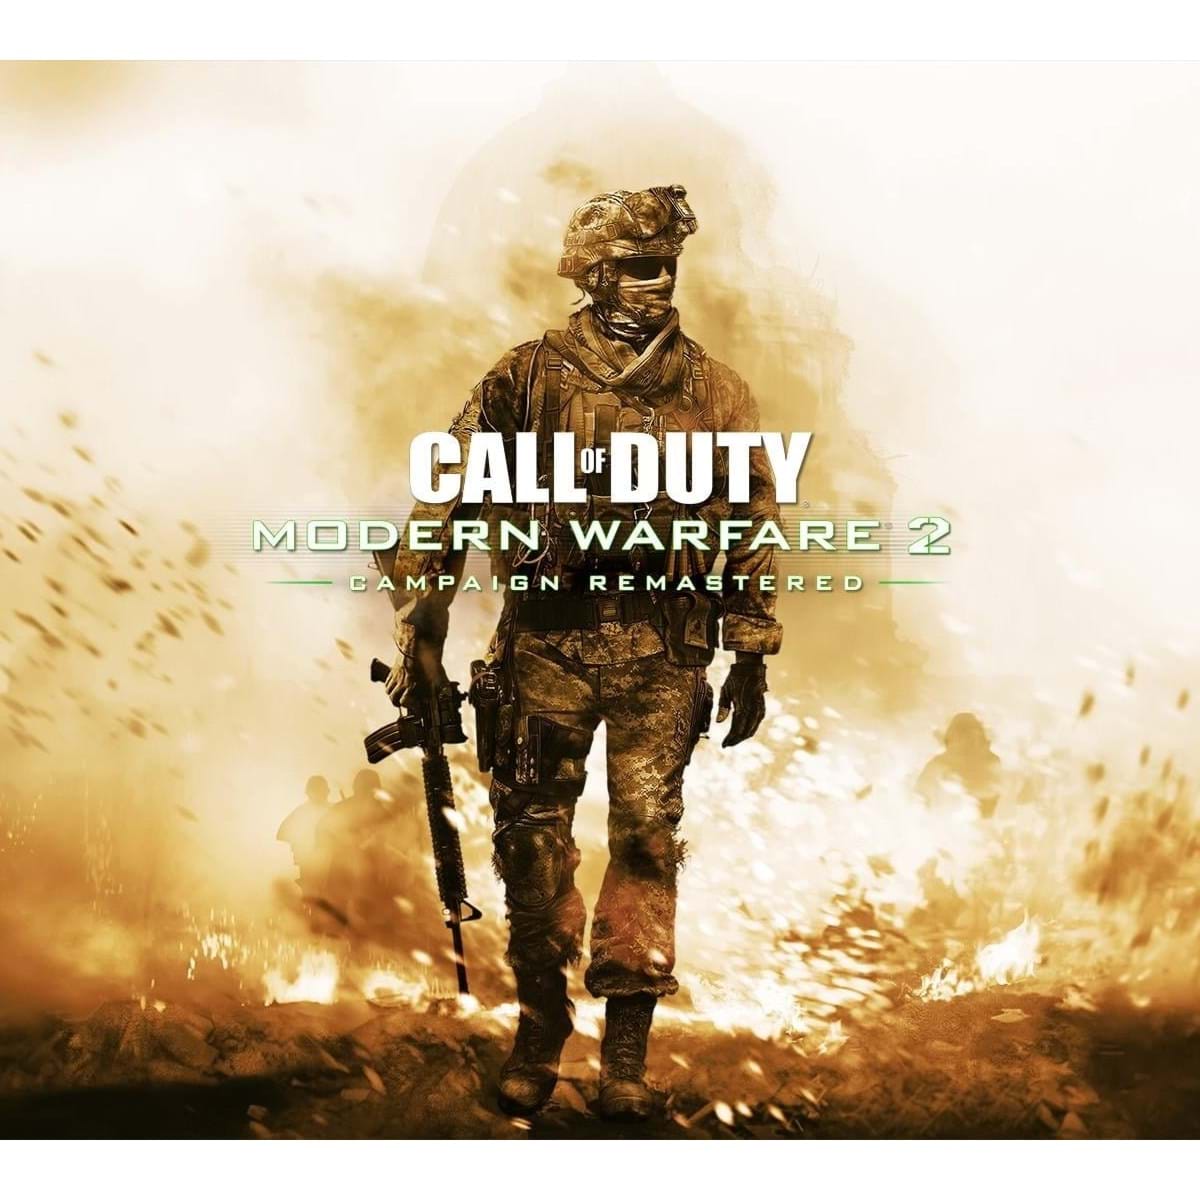 Edições e benefícios de Call of Duty: Modern Warfare II em detalhe